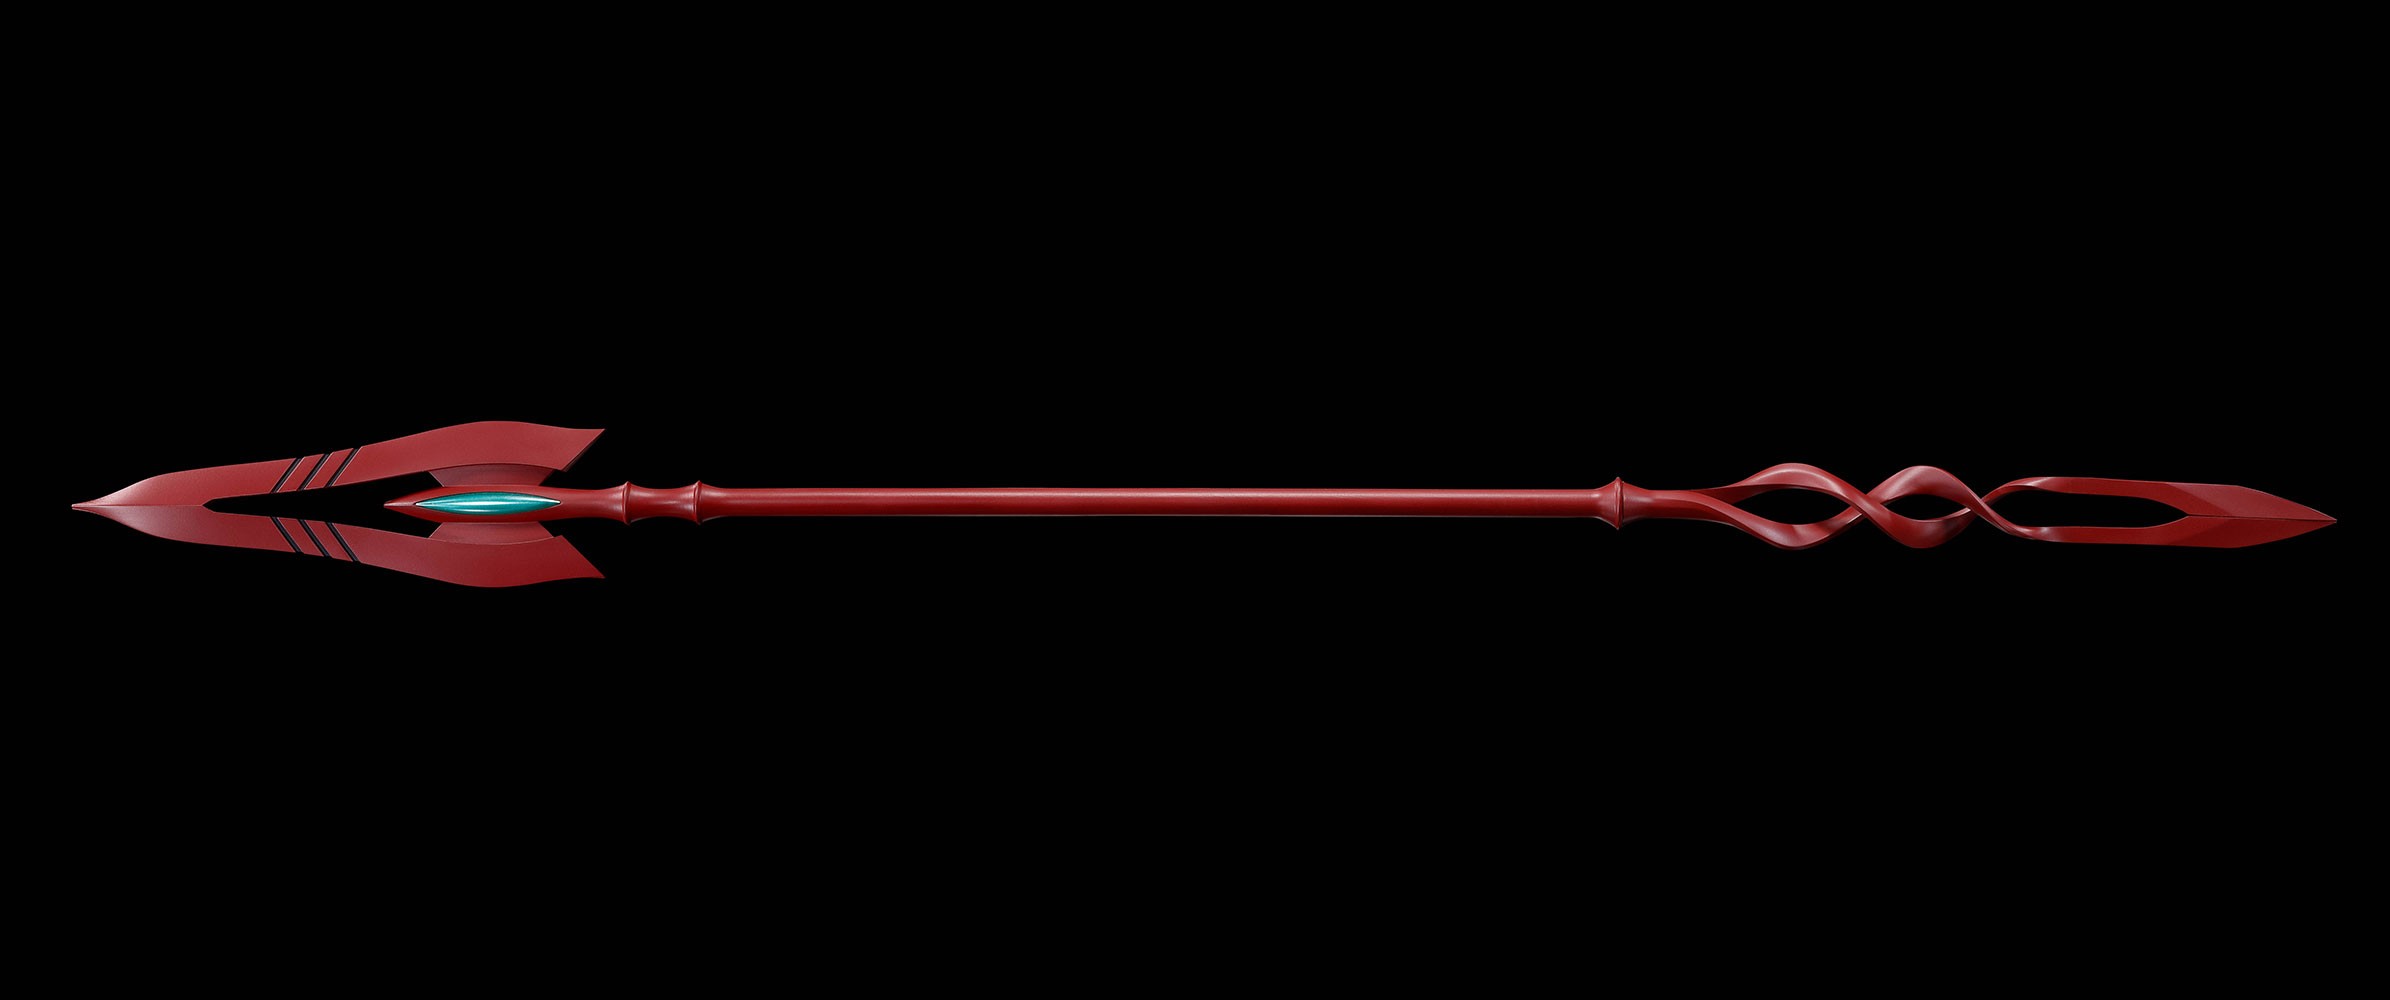 Evangelion Test Type-01 + Spear of Cassius